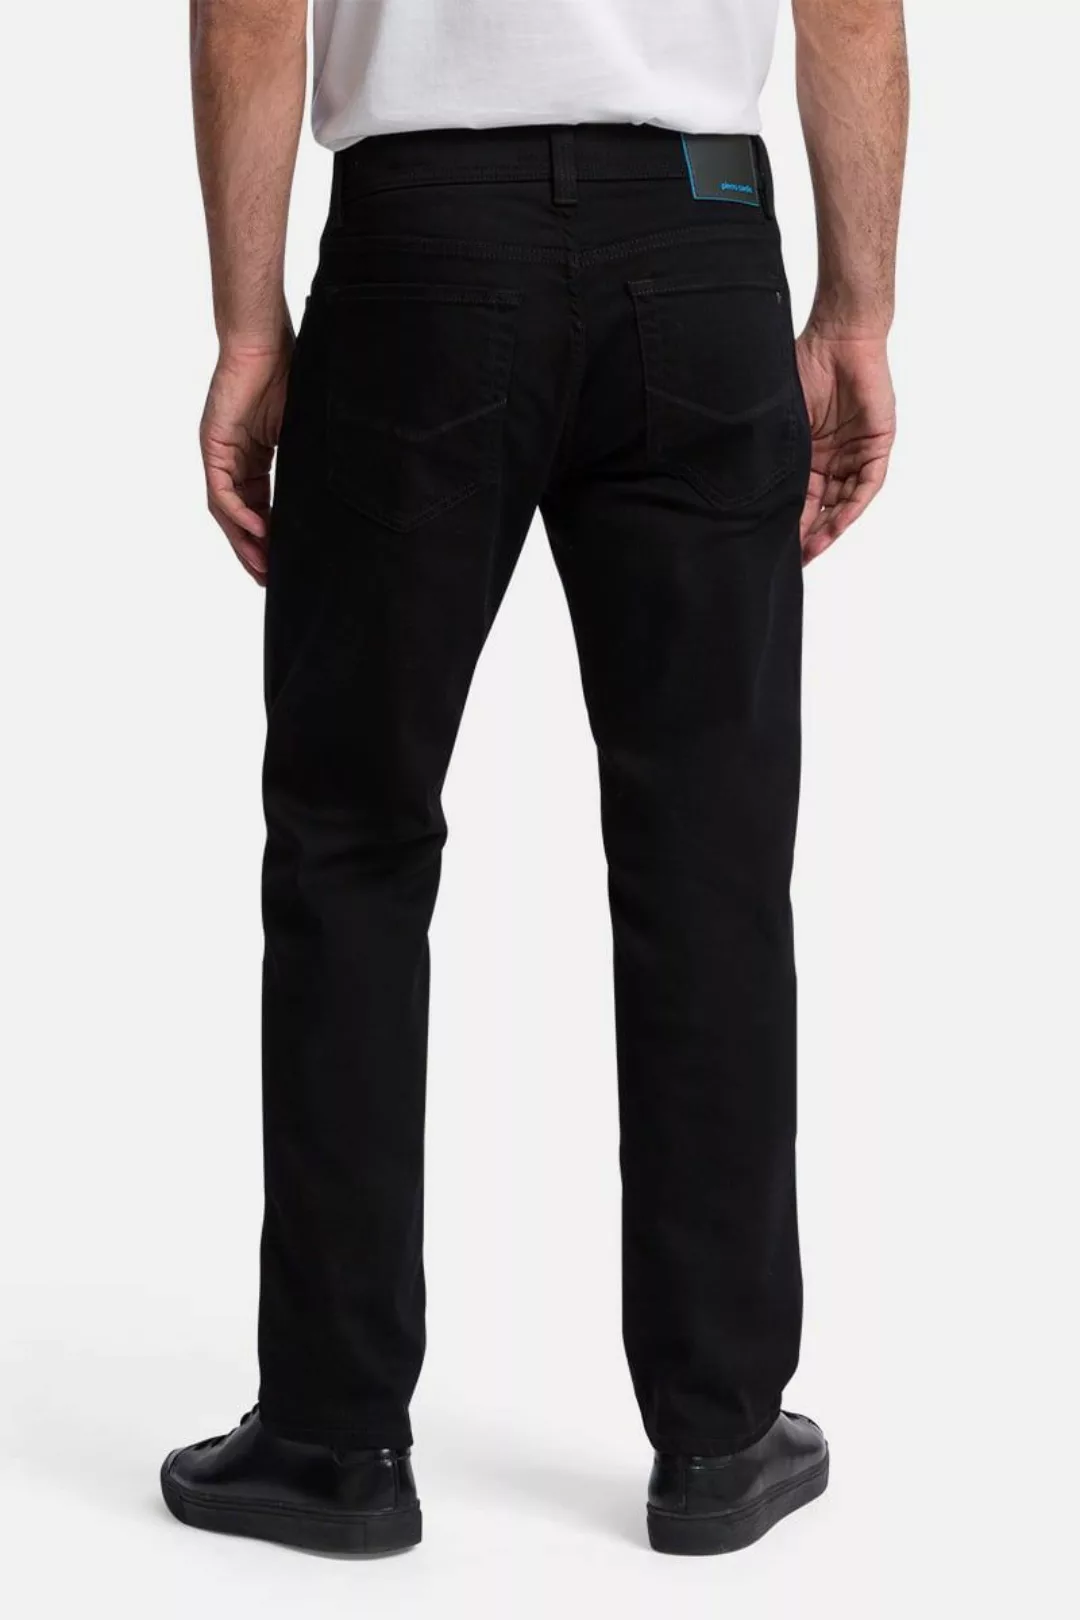 Pierre Cardin Trousers Lyon Tapered Future Flex Schwarz - Größe W 38 - L 30 günstig online kaufen